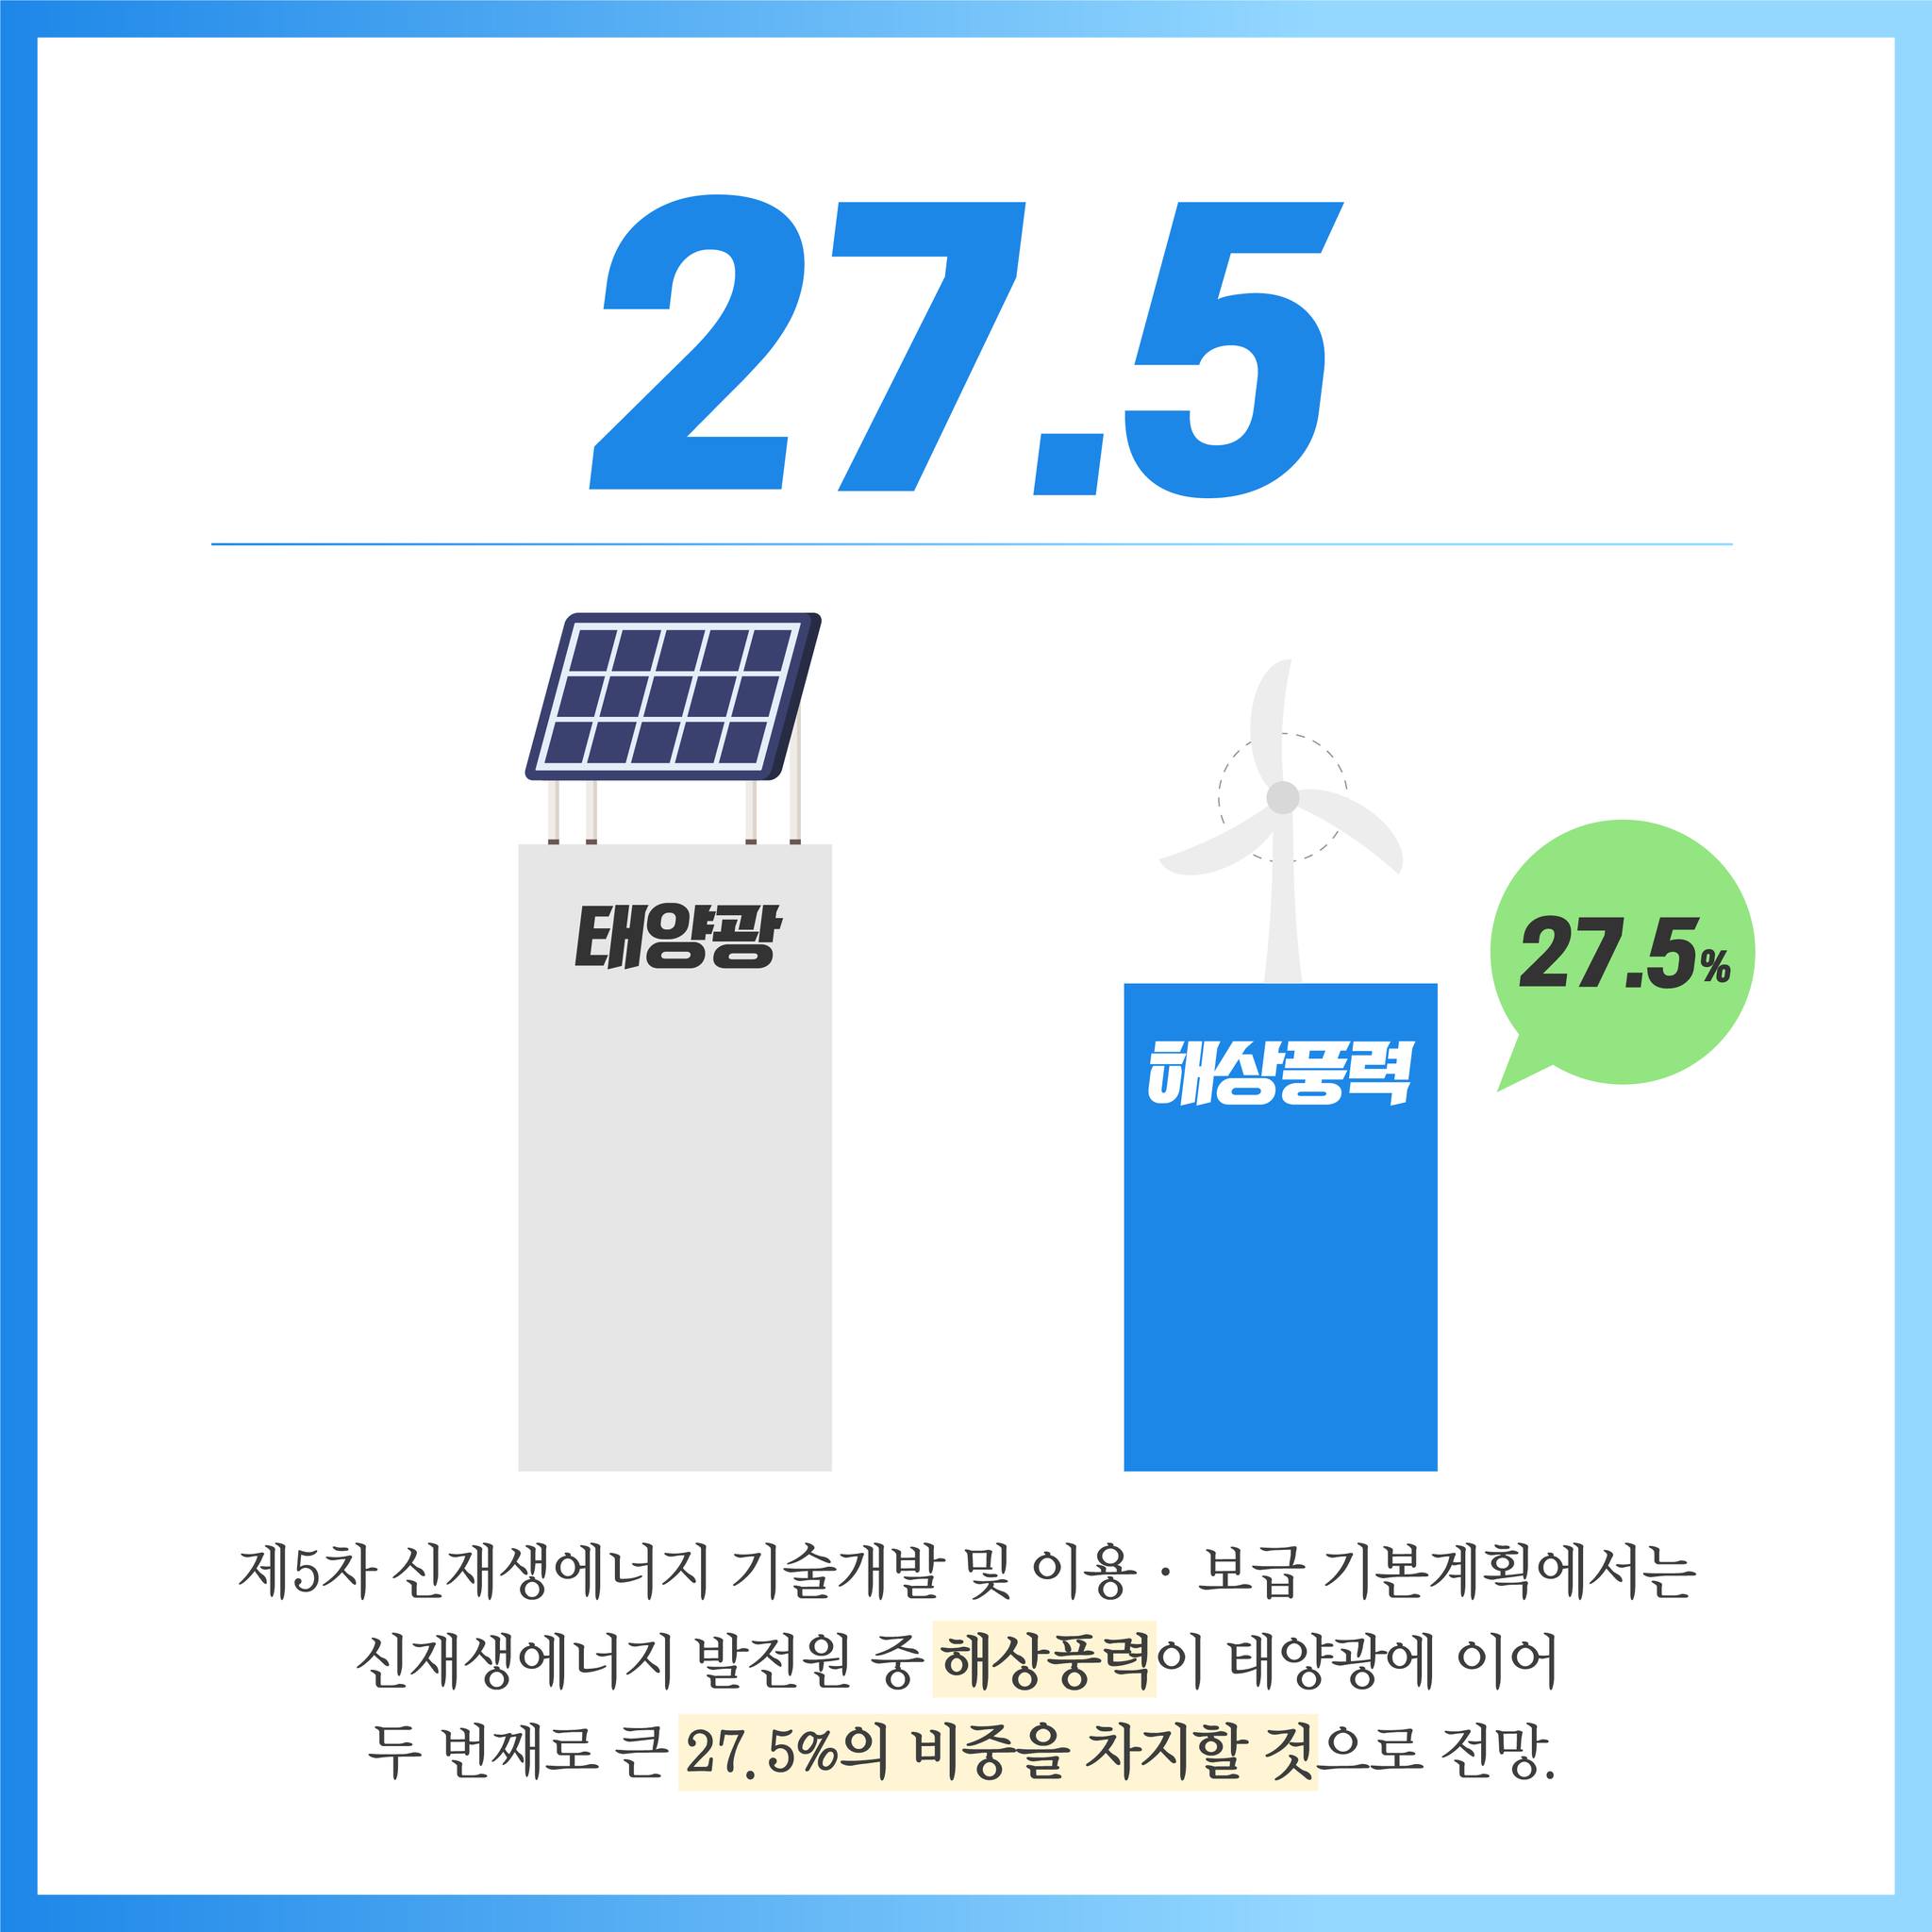 27.5 태양광 27.5% 해상풍력 제5차 신재생에너지 기술개발 및 이용 보급 기본계획에서는 신재생에너지 발전원 중 해상풍력이 태양광에 이어 두 번째로 큰 27. 5%의 비중을 차지할 것으로 전망.